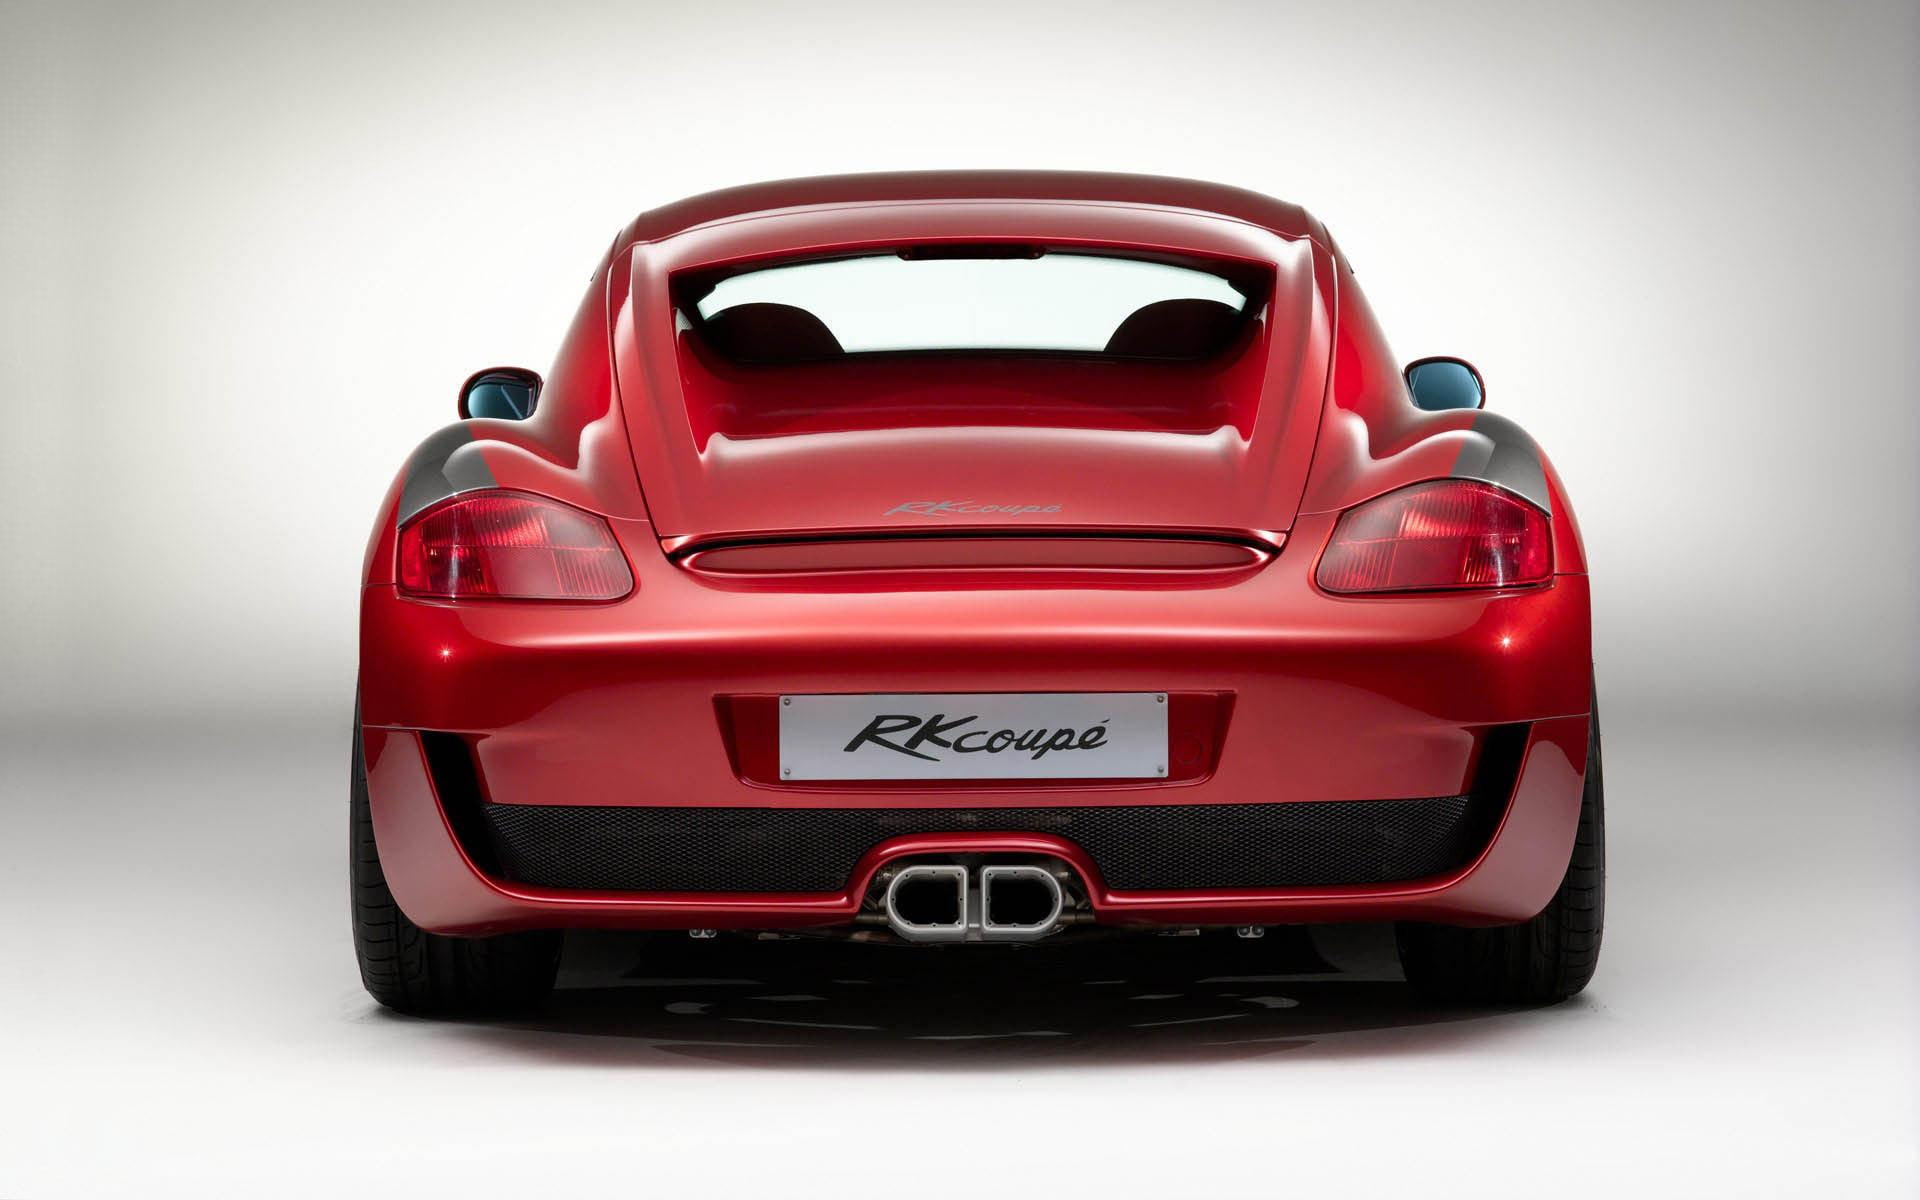 Porsche Cayman Rear , HD Wallpaper & Backgrounds